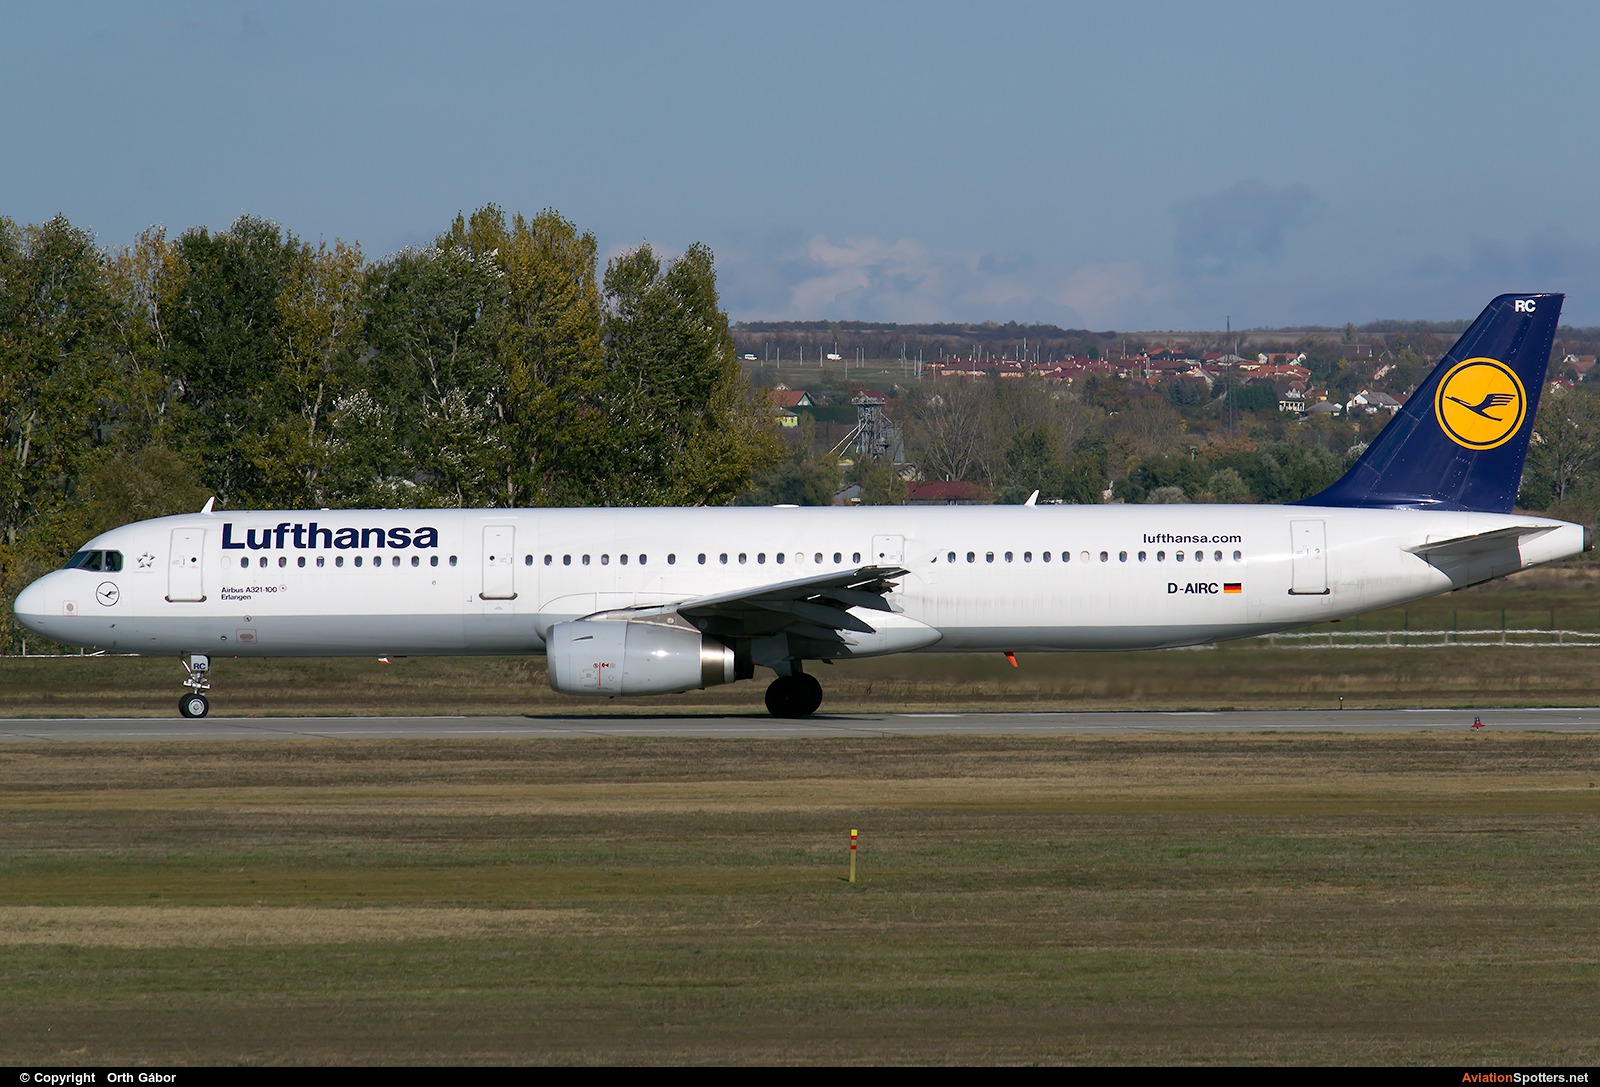 Lufthansa  -  A321  (D-AIRC) By Orth Gábor (Roodkop)